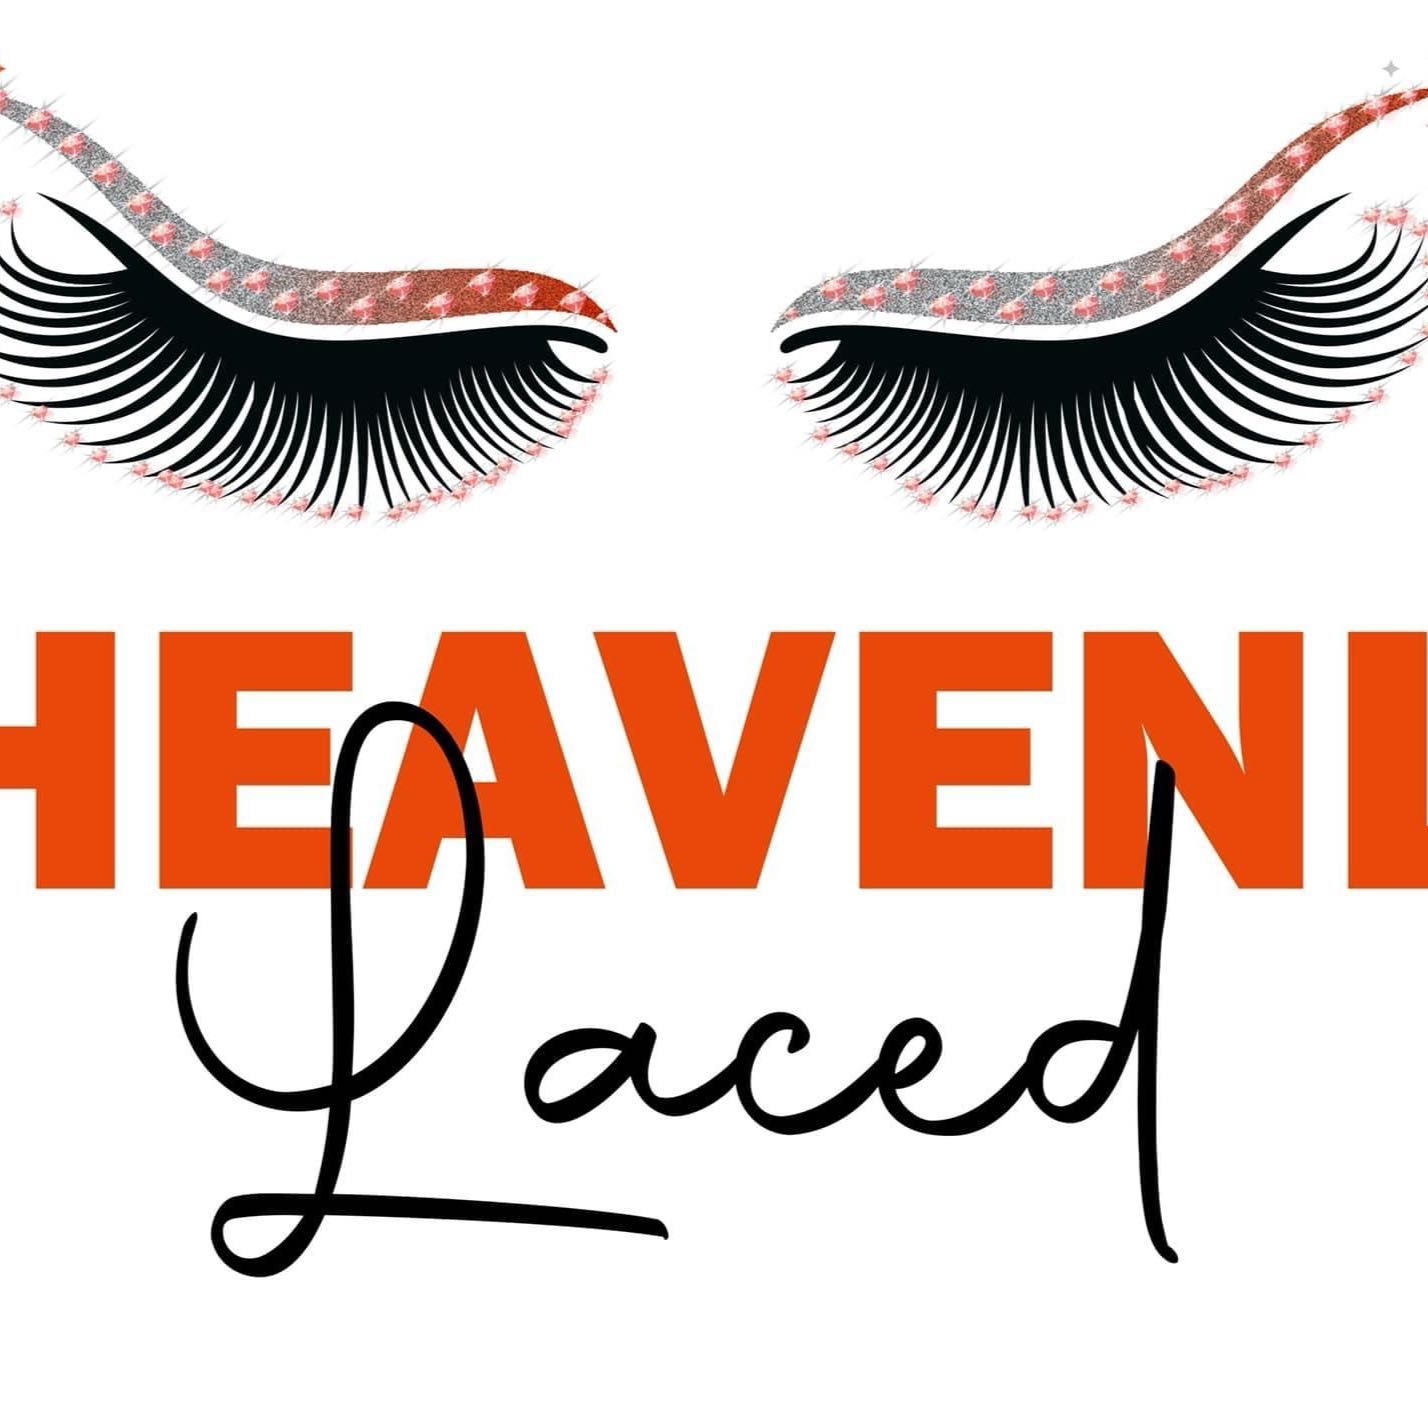 Heavenly Laced LLC, 3011 Elm St, Shreveport, 71104